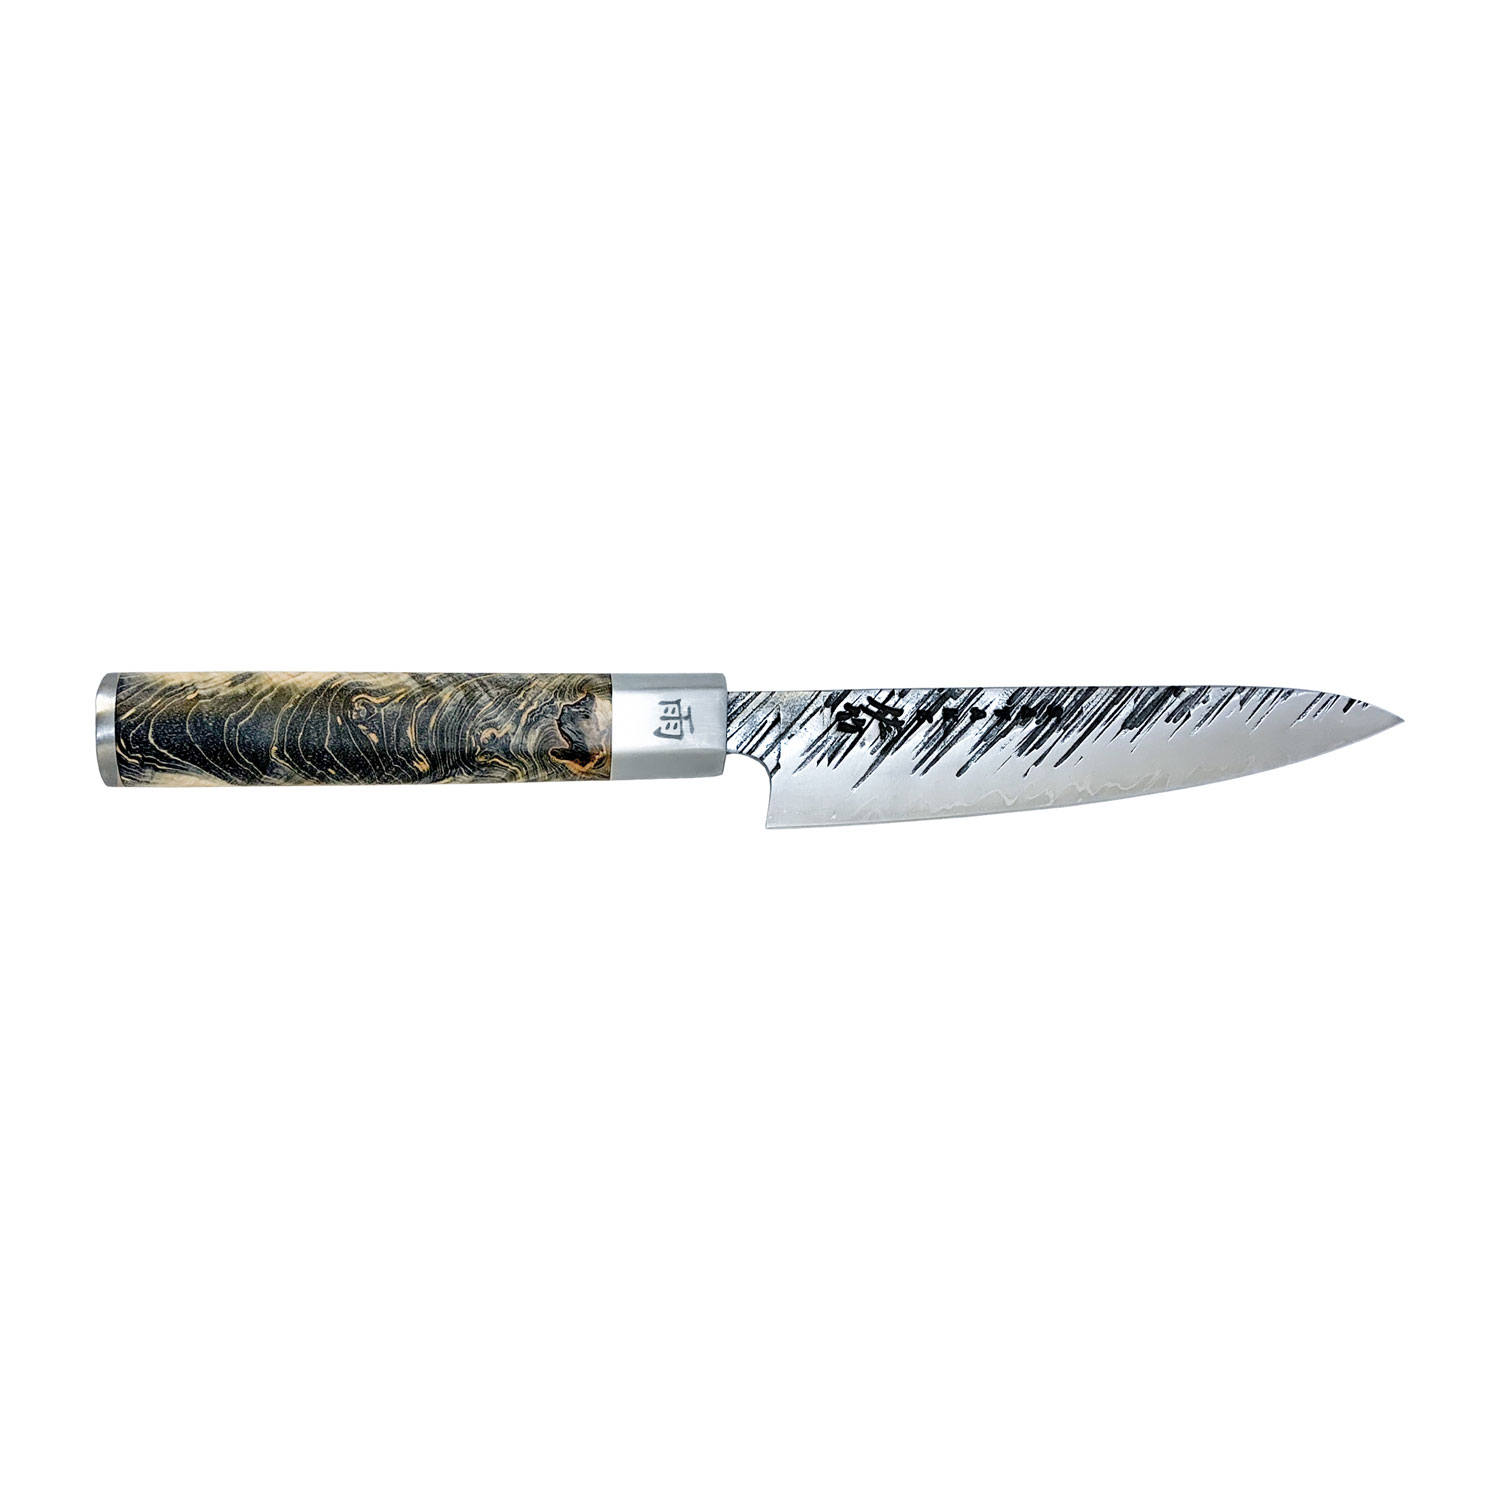 https://api-prod.royaldesign.se/api/products/image/2/satake-ame-petty-paring-knife-12-cm-0